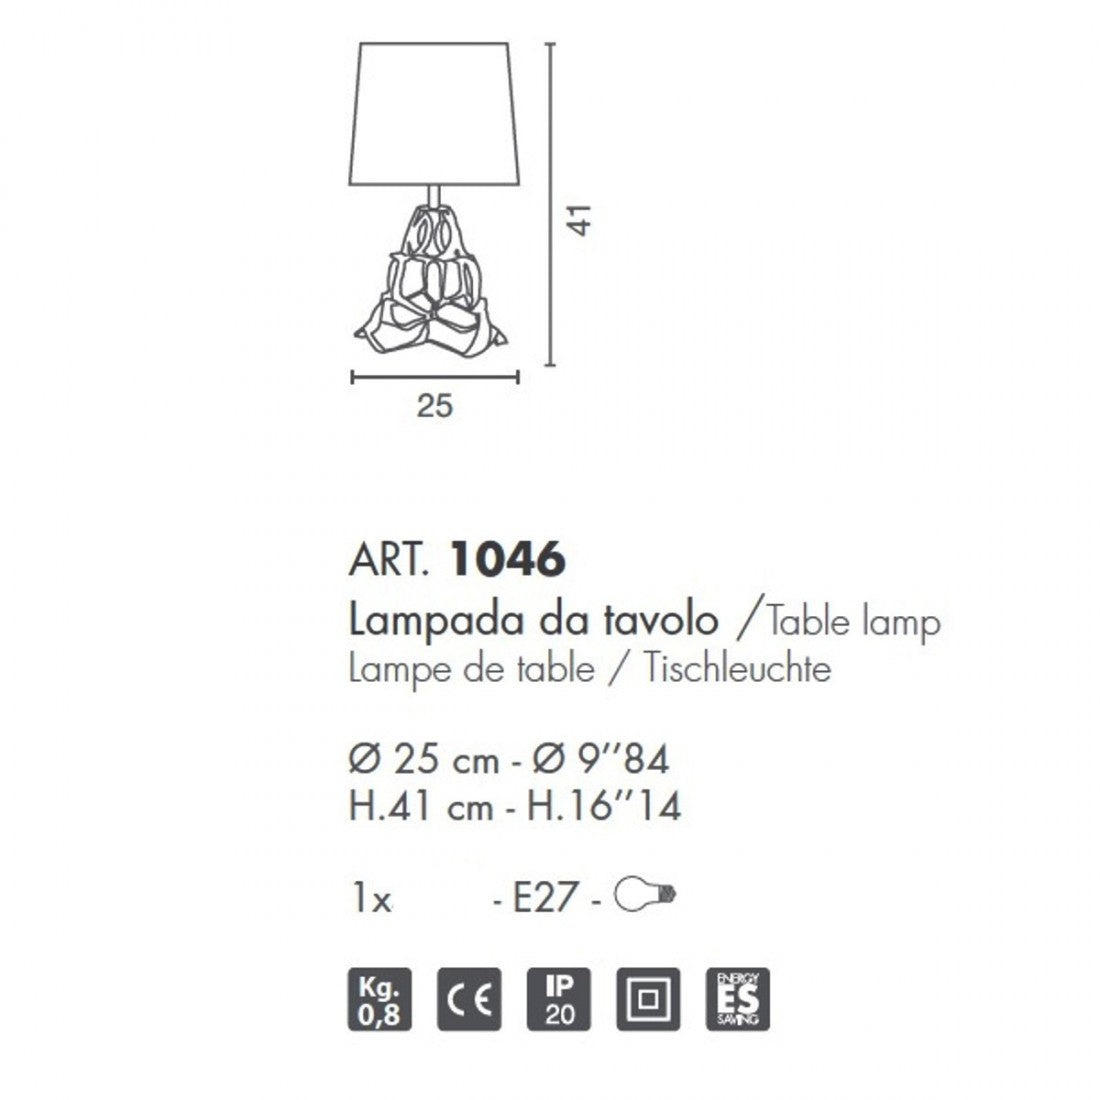 Abat-jour moderno selene anais 1046 011 009 e27 led metallo tessuto lampada tavolo, finitura metallo bronzo